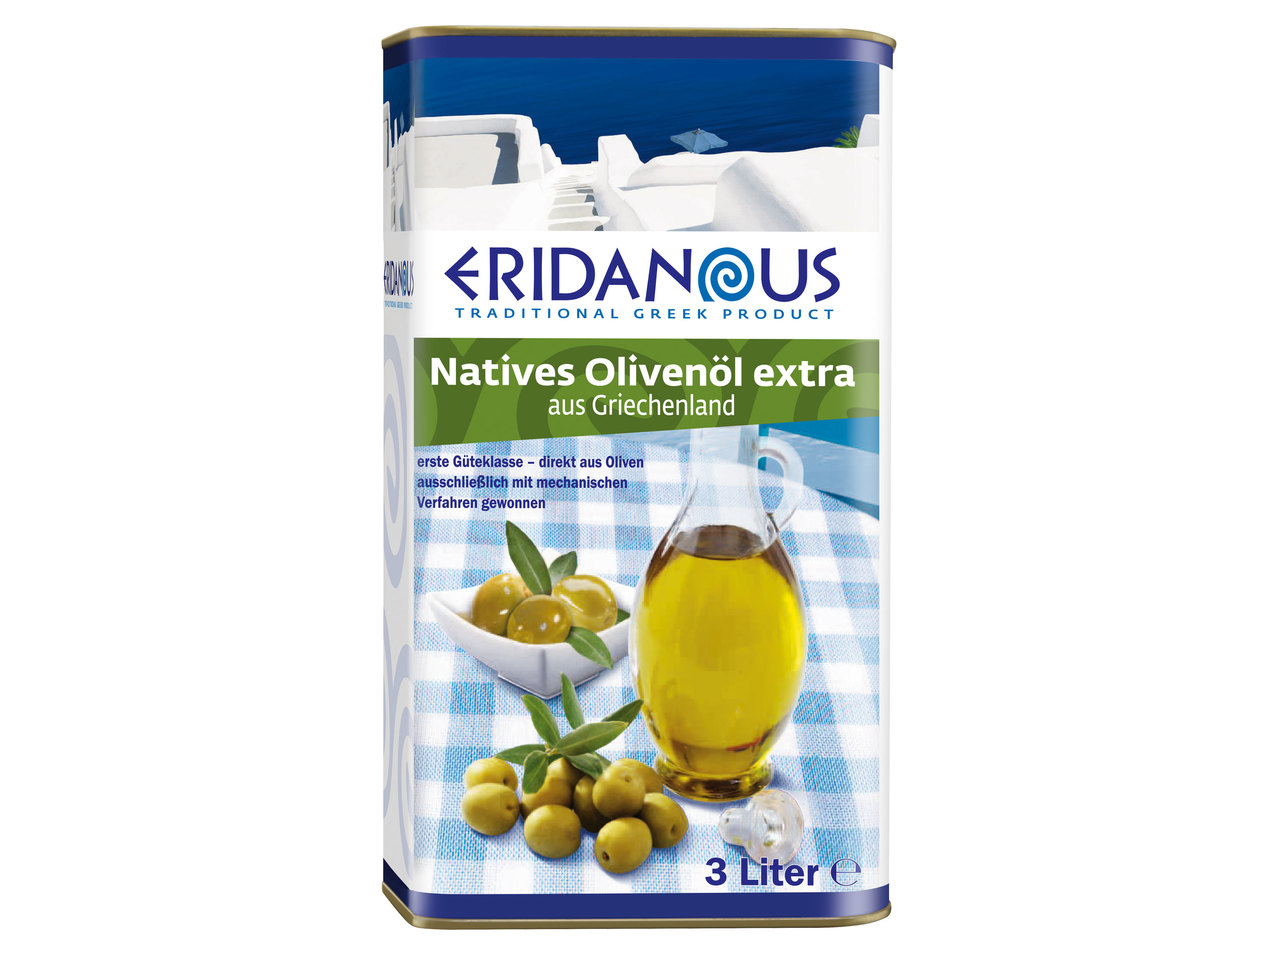 ERIDANOUS Extra natives Olivenöl